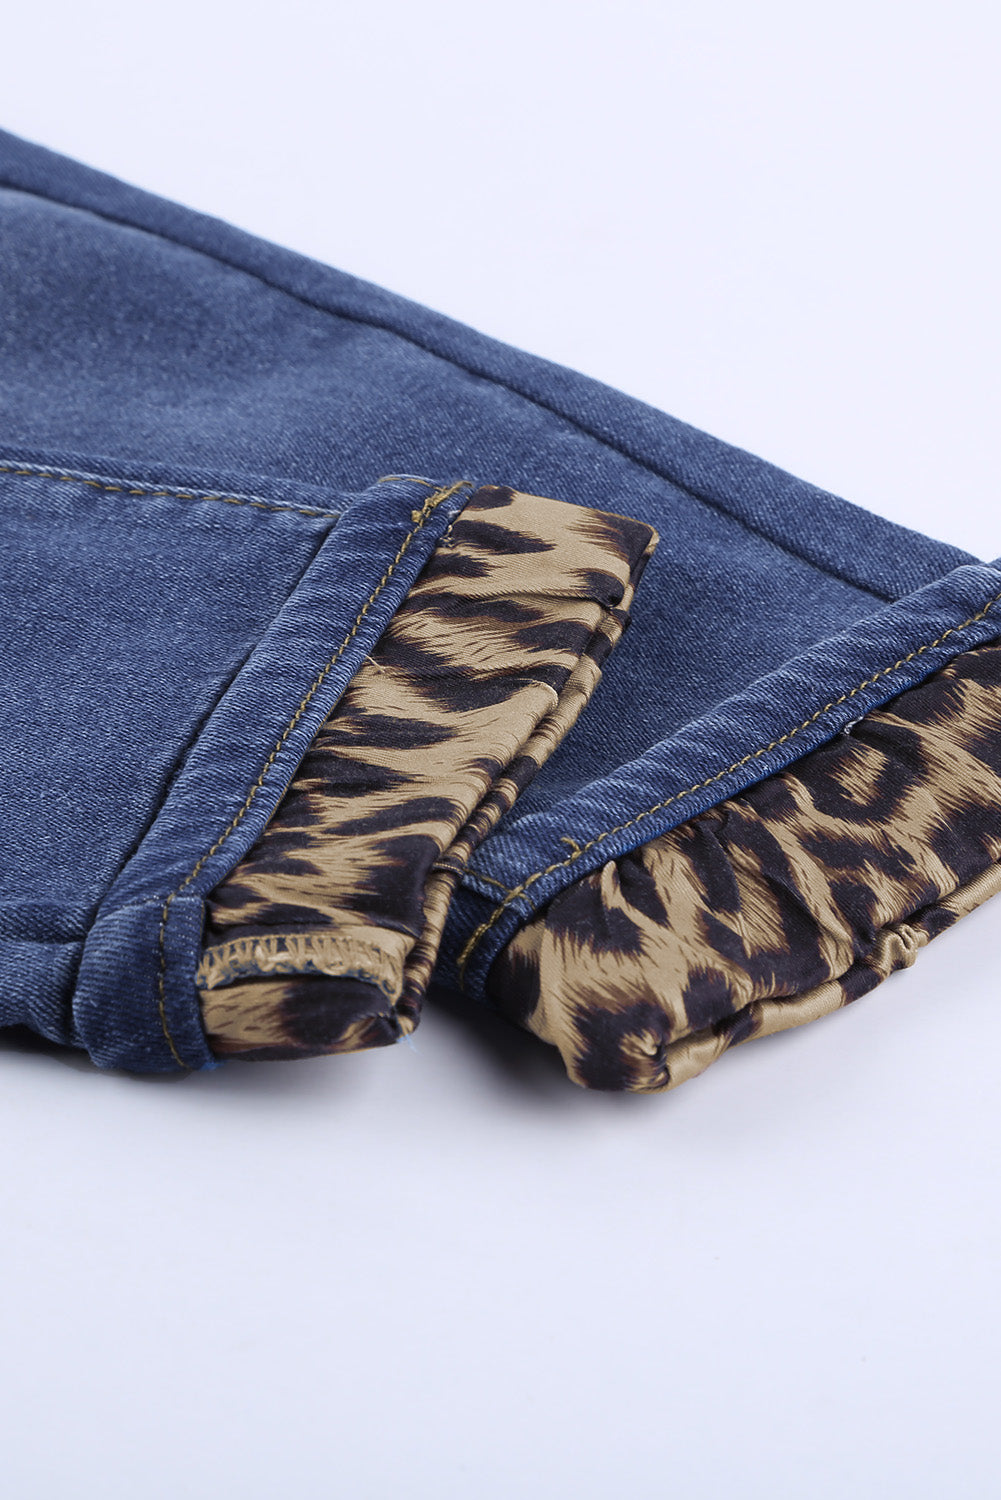 Leopard Patchwork Distressed Jeans - DromedarShop.com Online Boutique